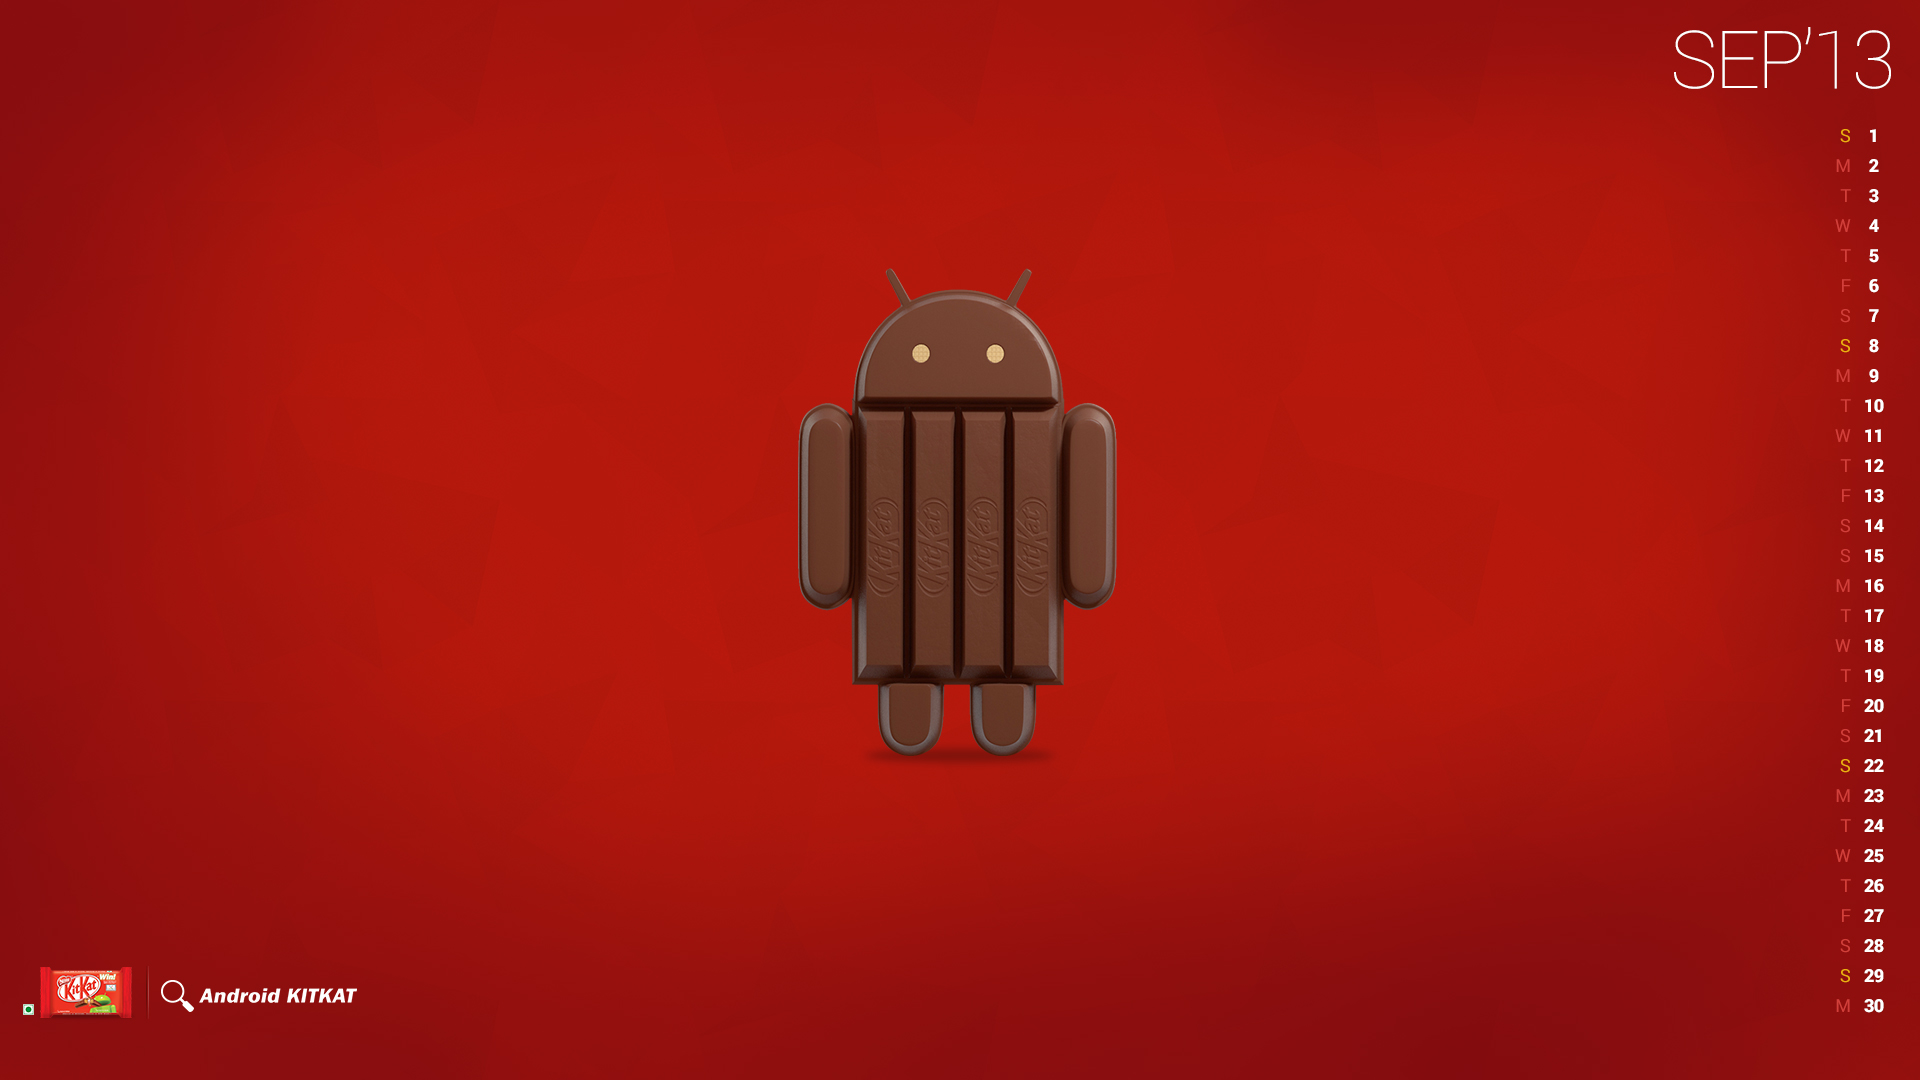 Android Kitkat Wallpaper For Desktop